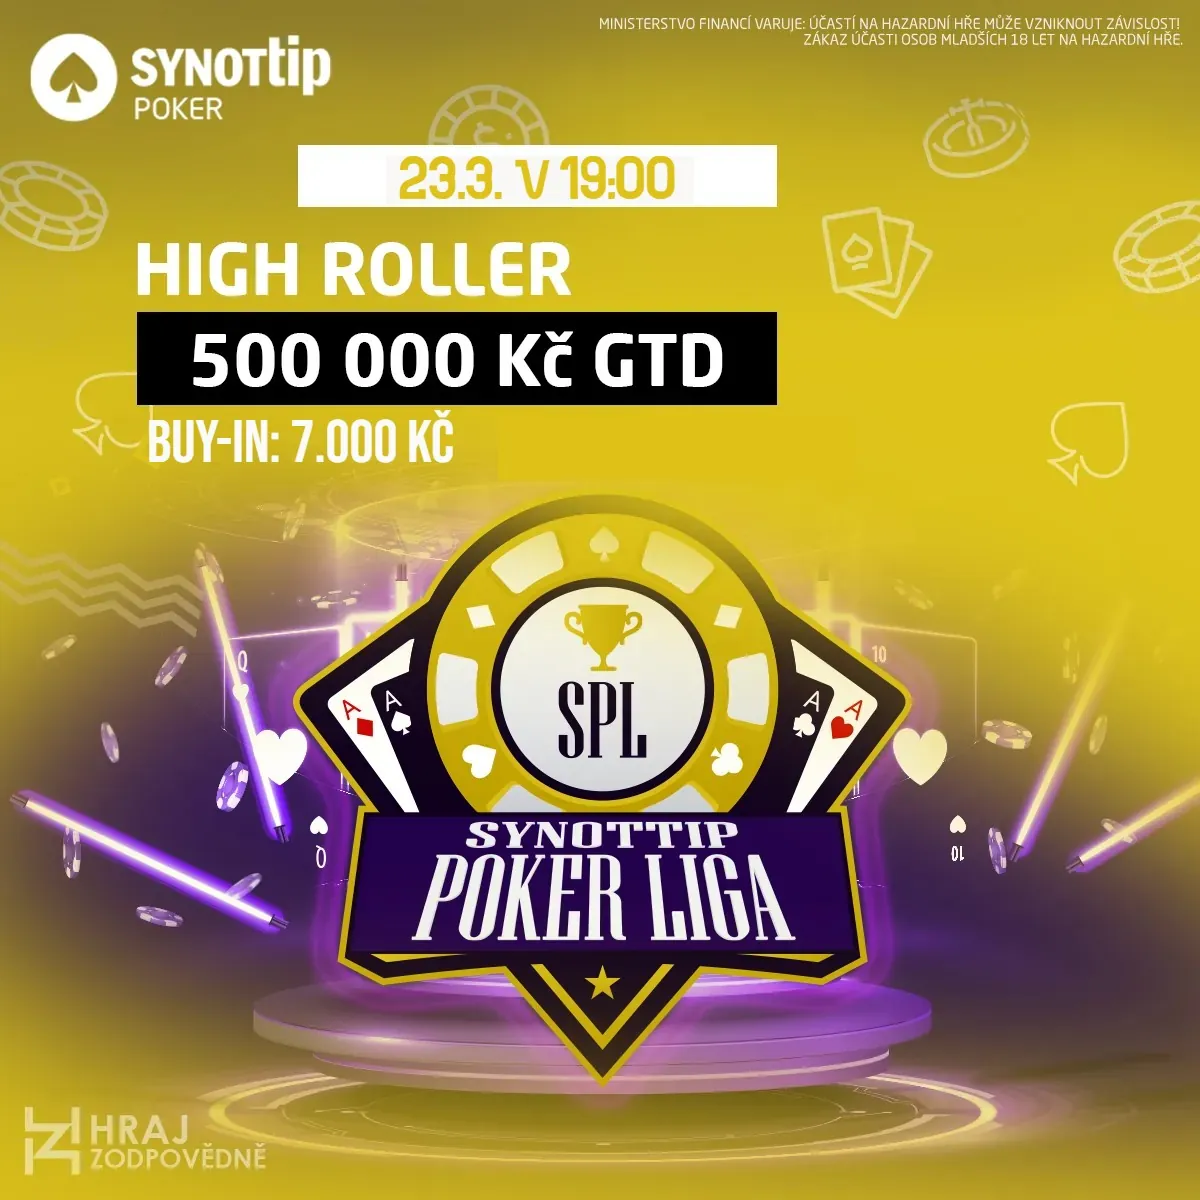 SPL high roller, online poker turnaje synottip